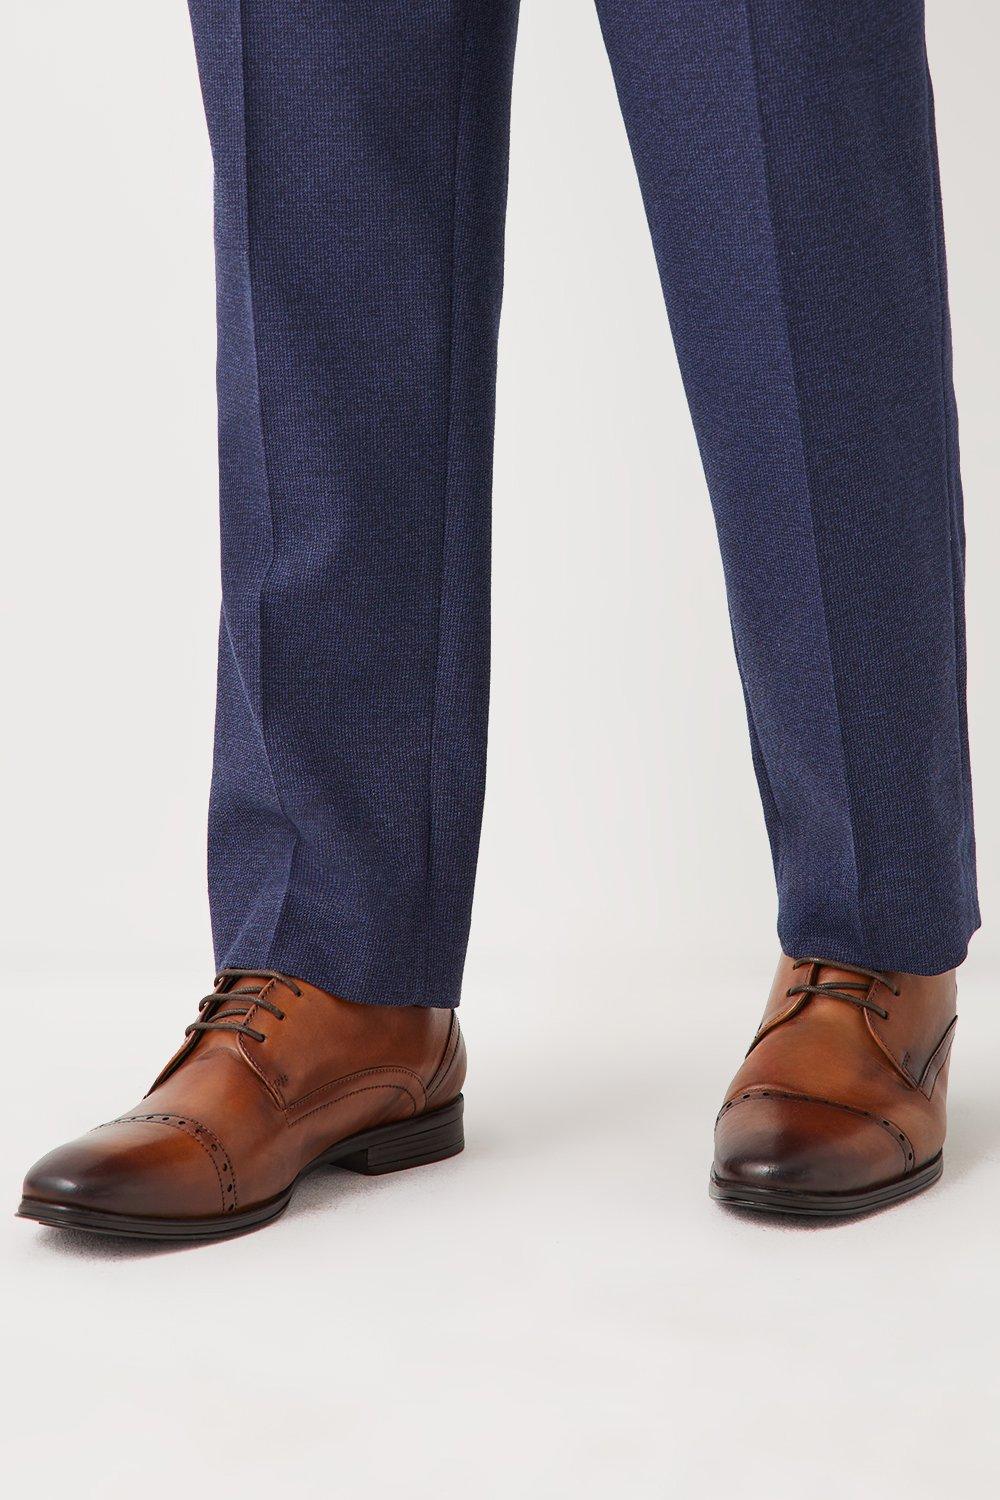 Кожаные броги на шнуровке Archie Comfort с носком Debenhams, коричневый кожаные туфли дерби airsoft comfort с перфорацией на шнуровке debenhams коричневый